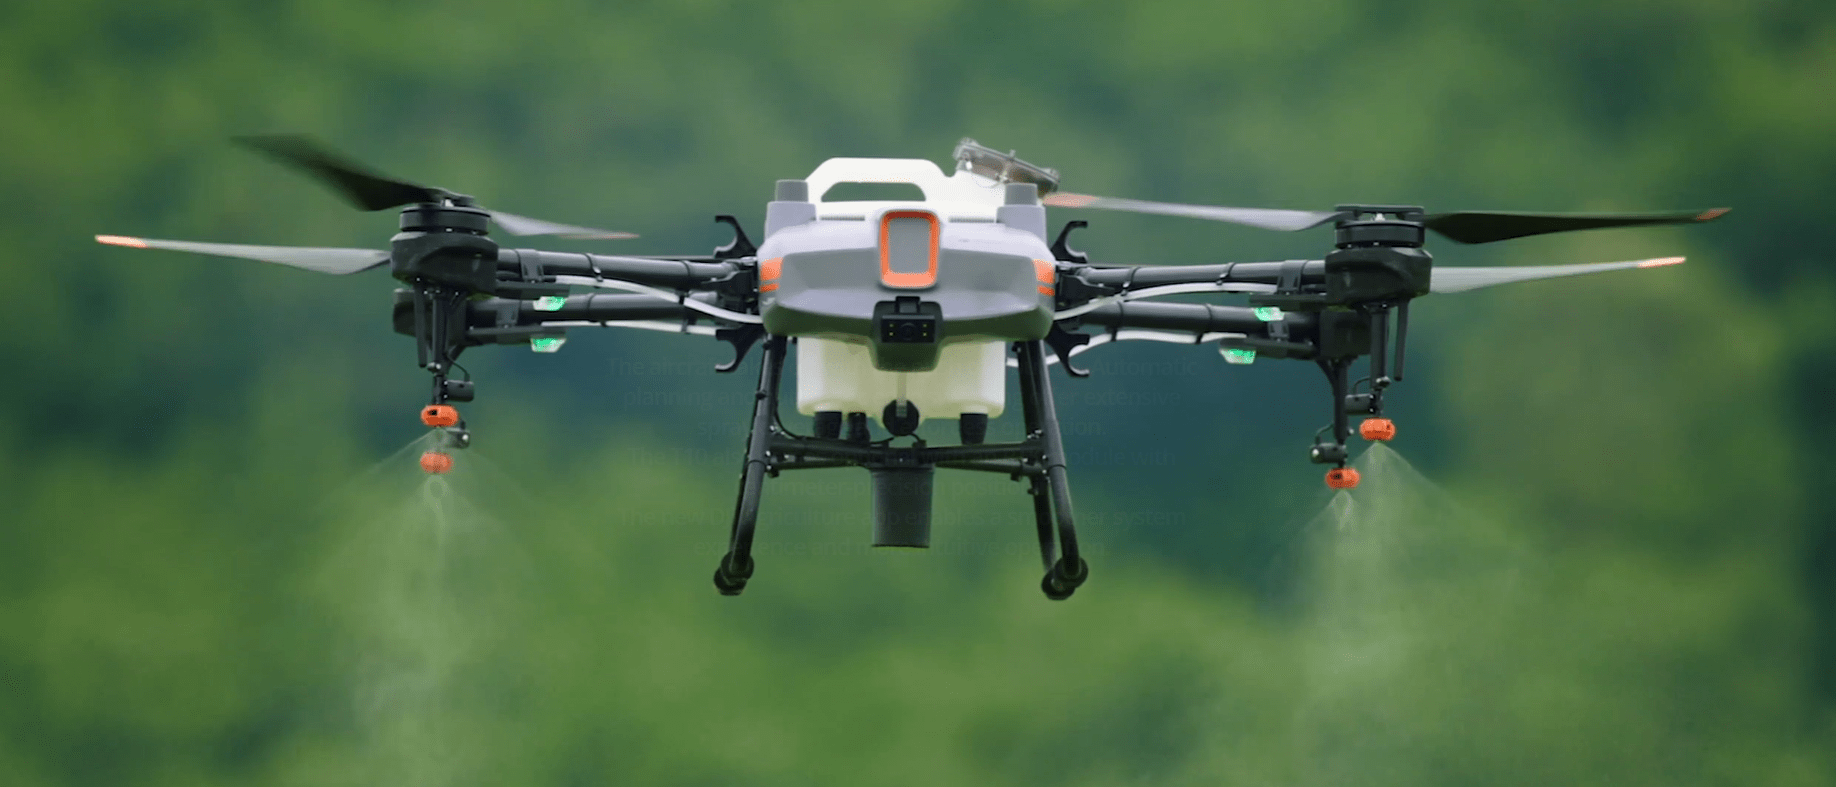 Dron do oprysku i ochrony roślin dla rolnictwa DJI Agras T10